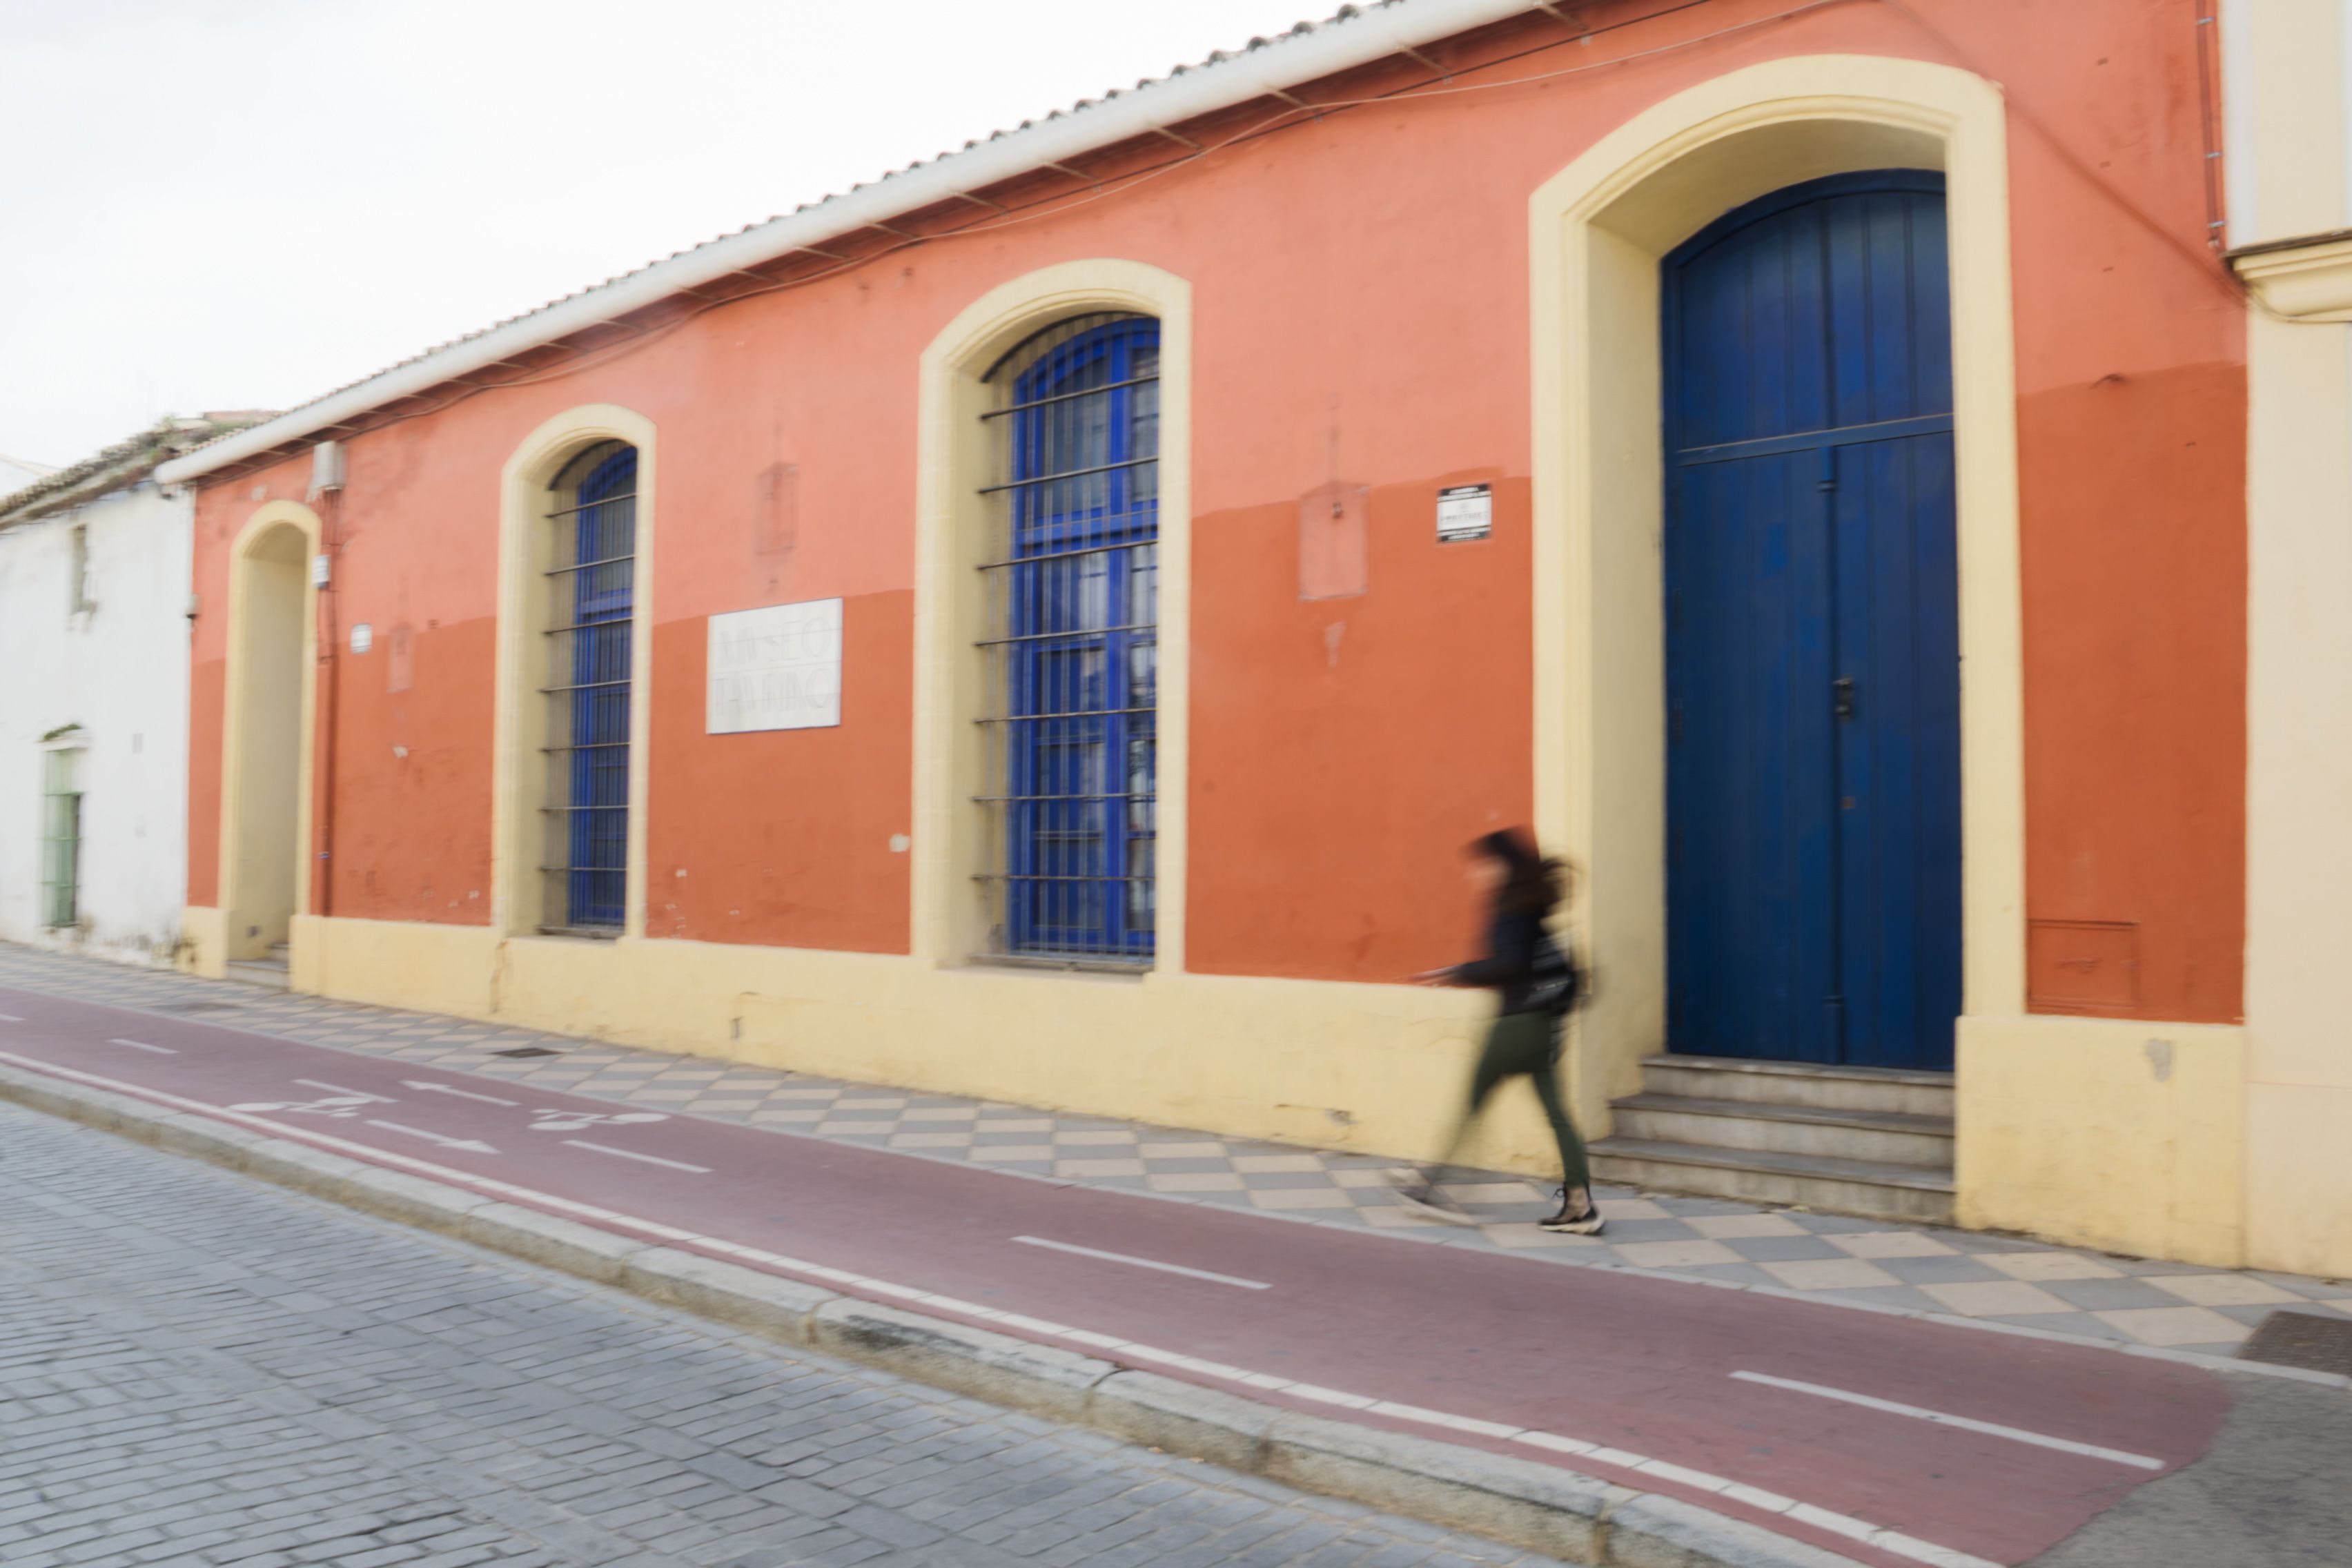 Inmueble de la calle Pozo del Olivar, que será cedido gratuitamente por el Ayuntamiento de Jerez a la Unión de Hermandades.